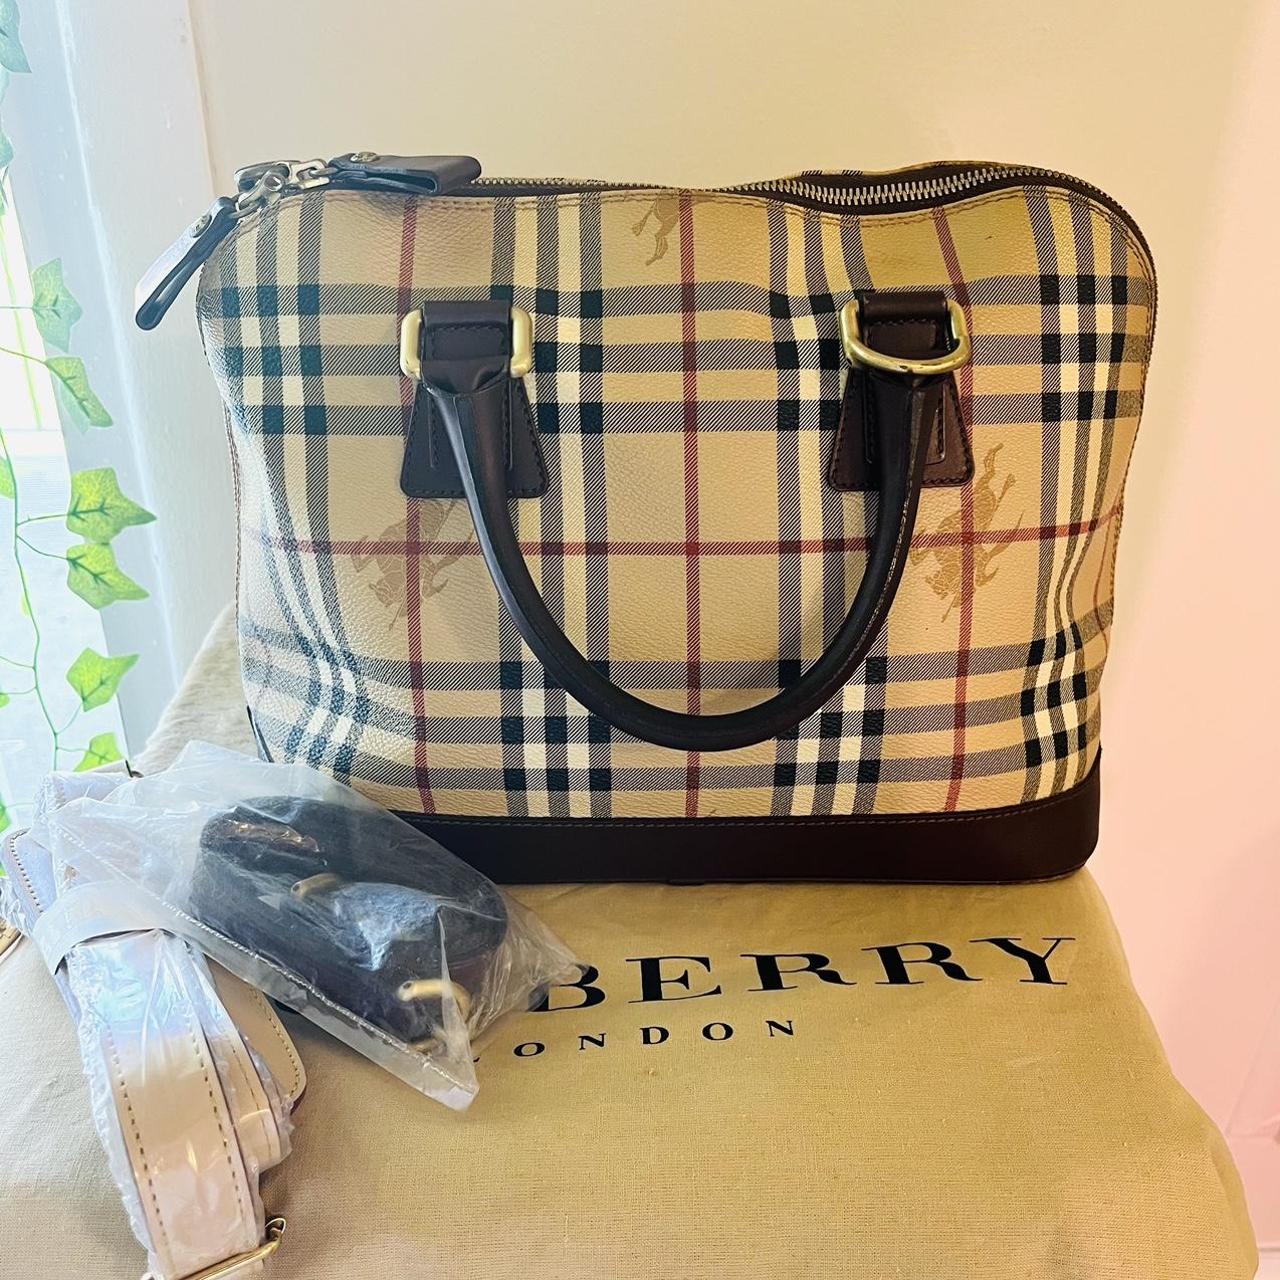 Burberry Women's Bag - Cream